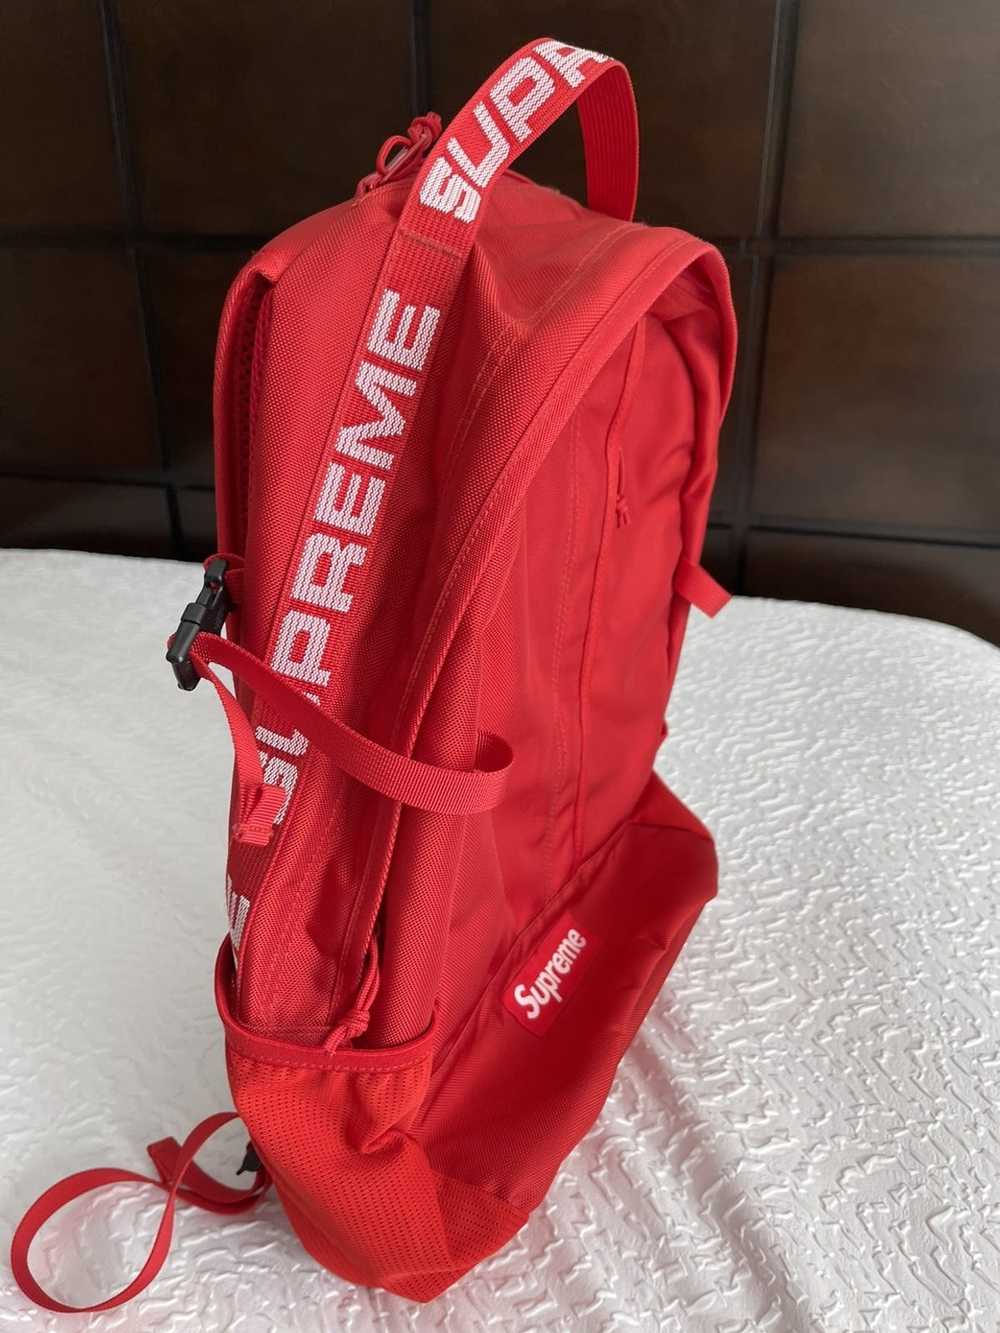 Supreme Shoulder Bag, Red (SS18)